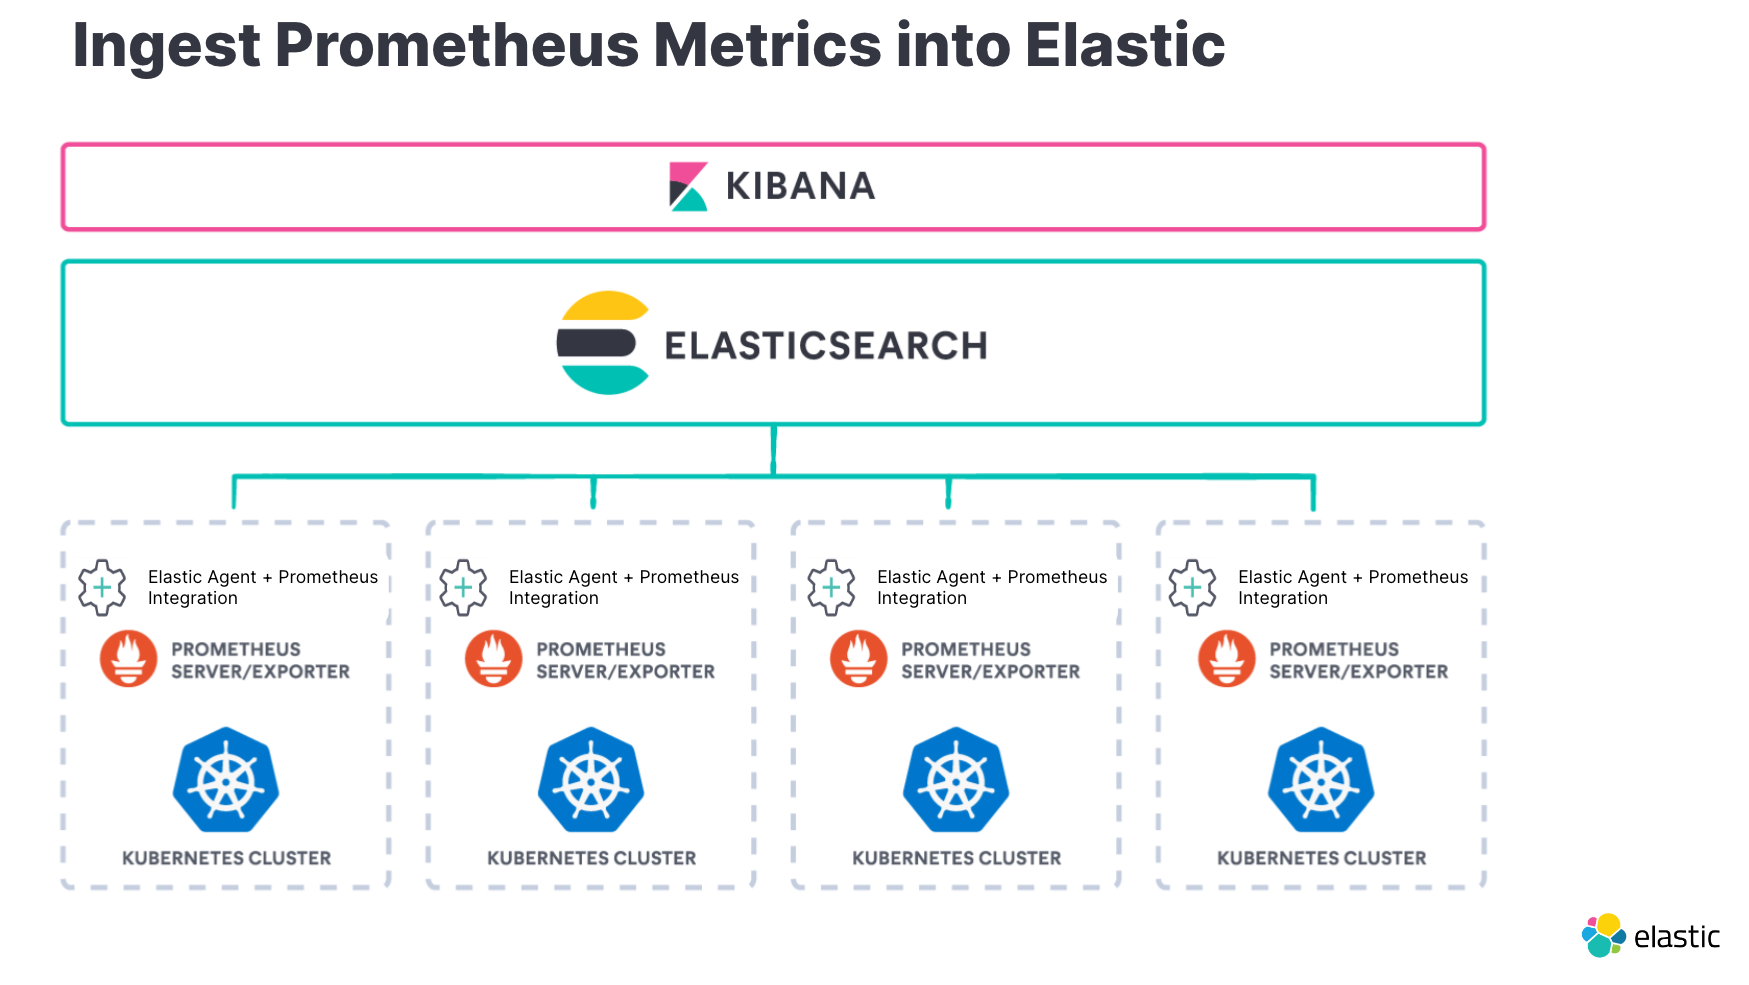 ingest prometheus metrics at elastic